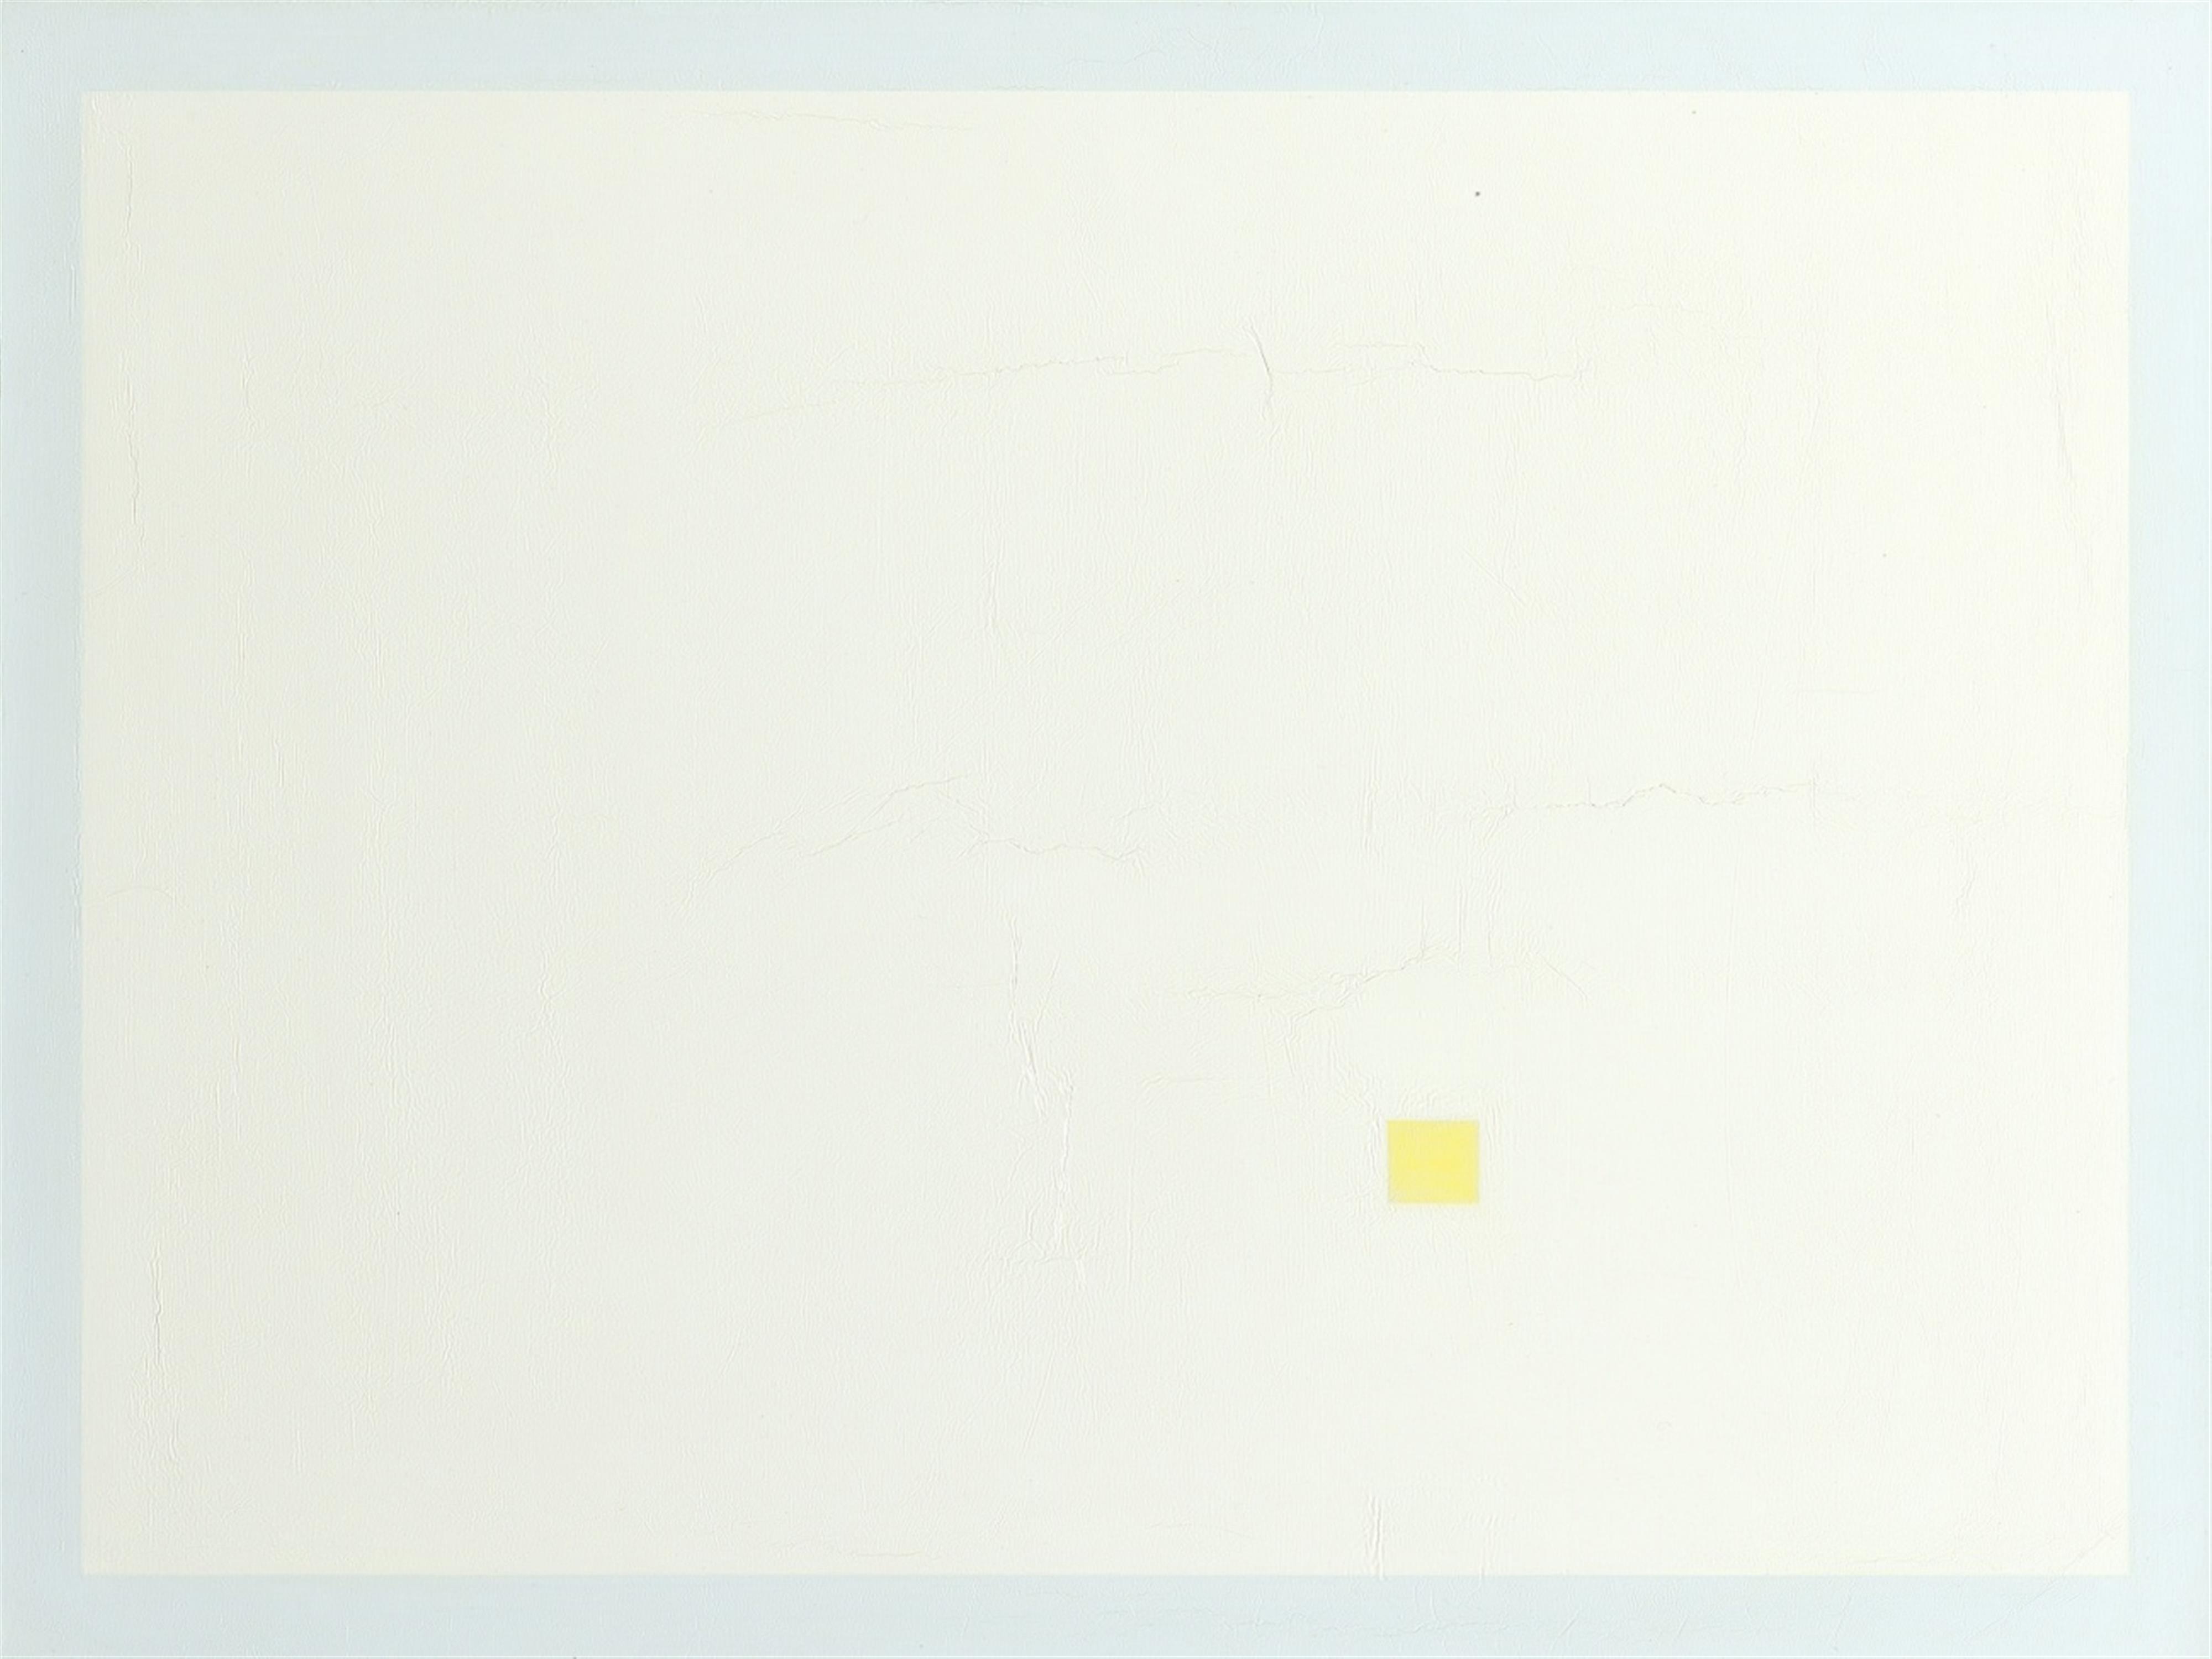 Antonio Calderara - Quadrato giallo in rettangolo bianco - image-1